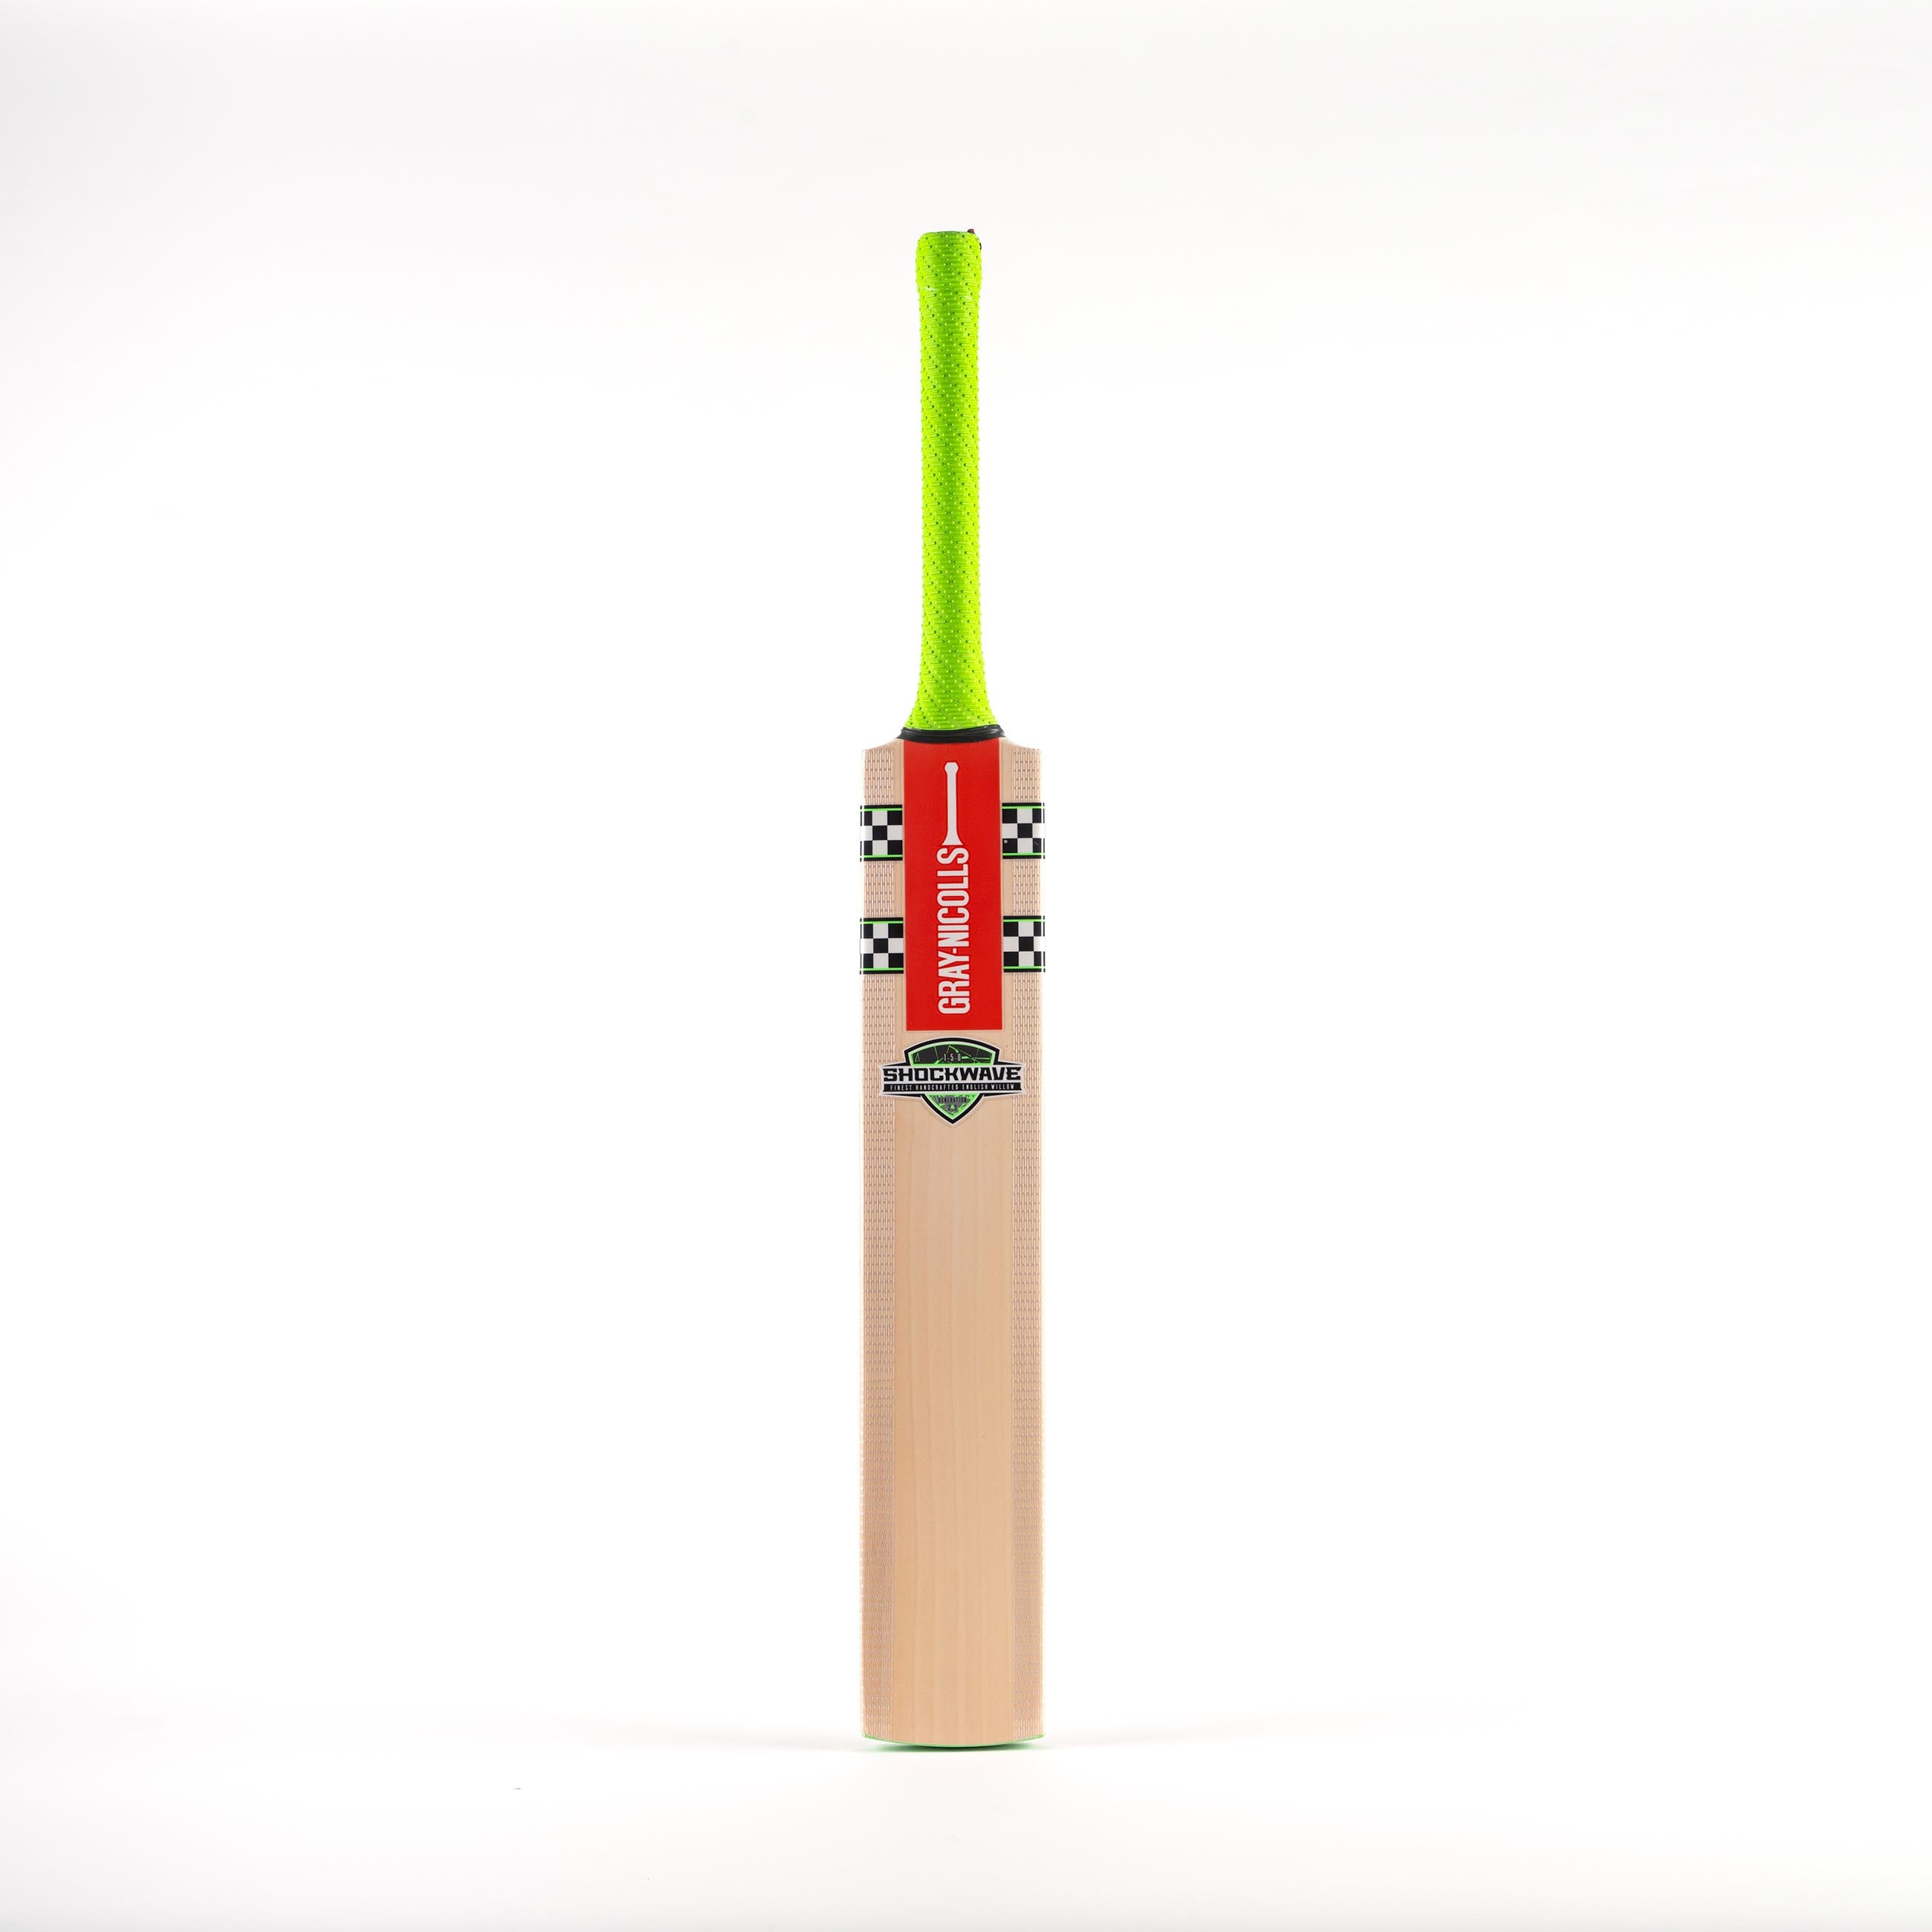 Shockwave 2.3 150 Infant Junior Cricket Bat